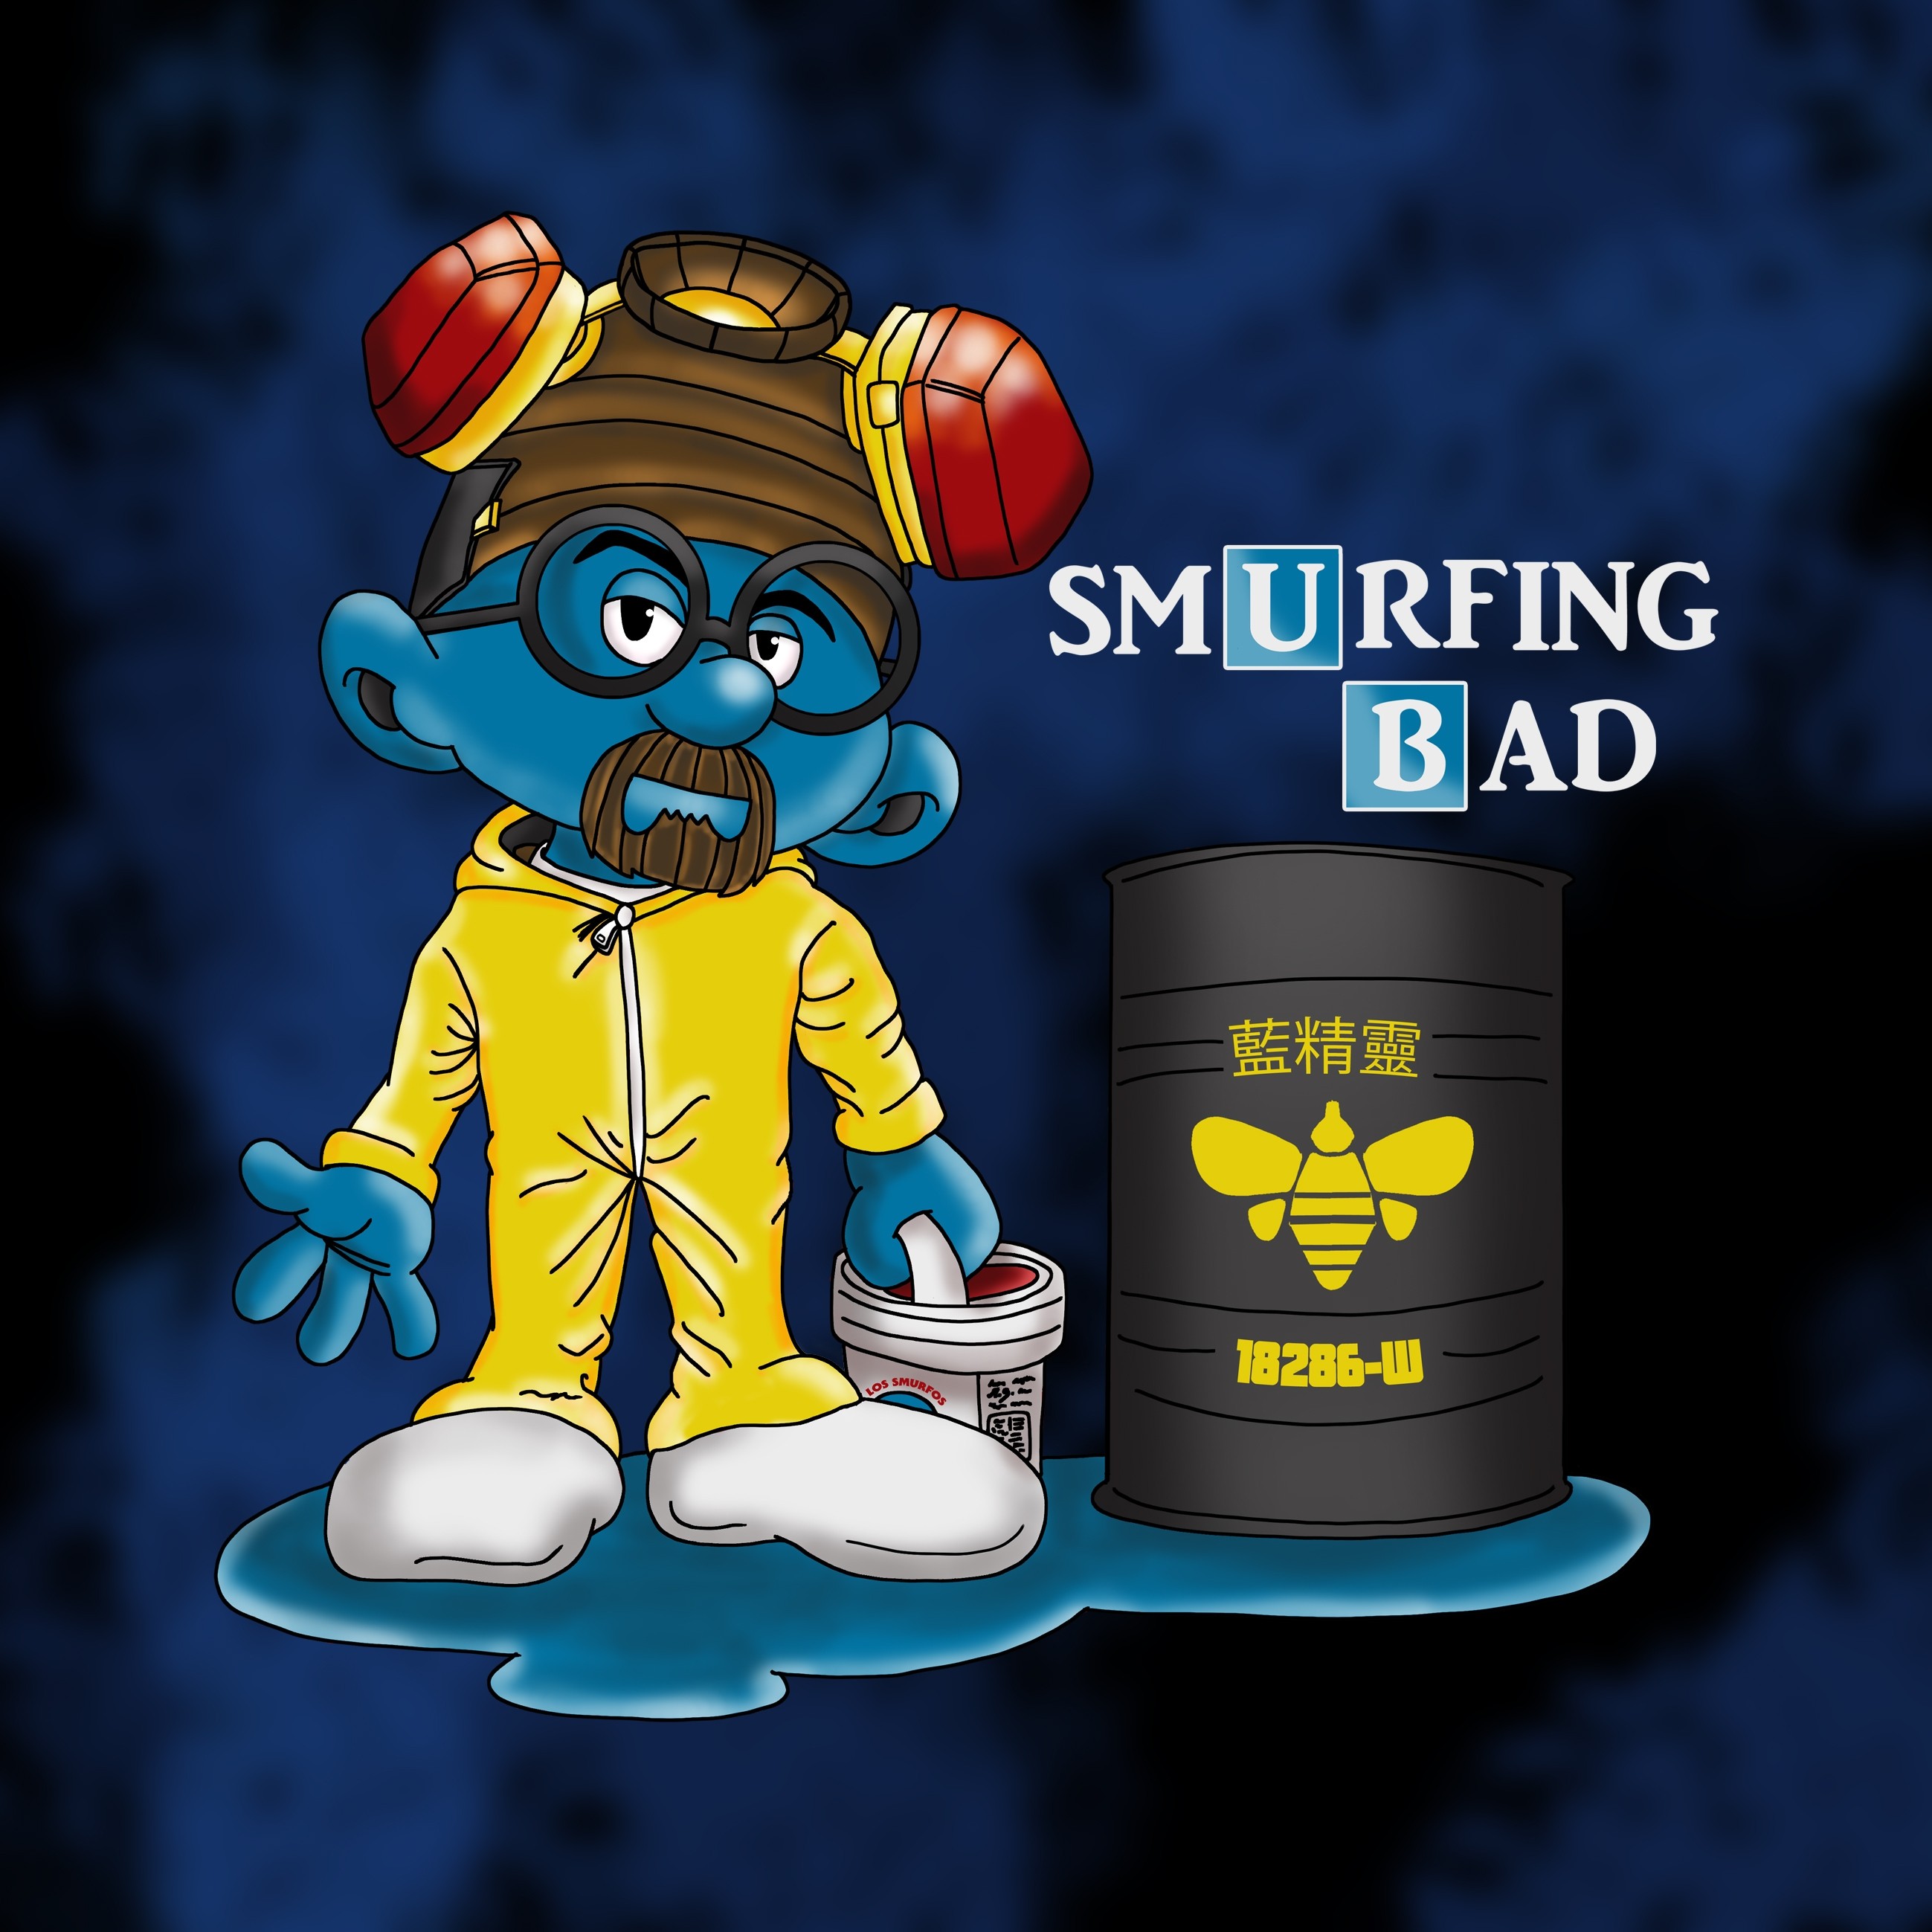 KingsGlass „Smurfing Bad“